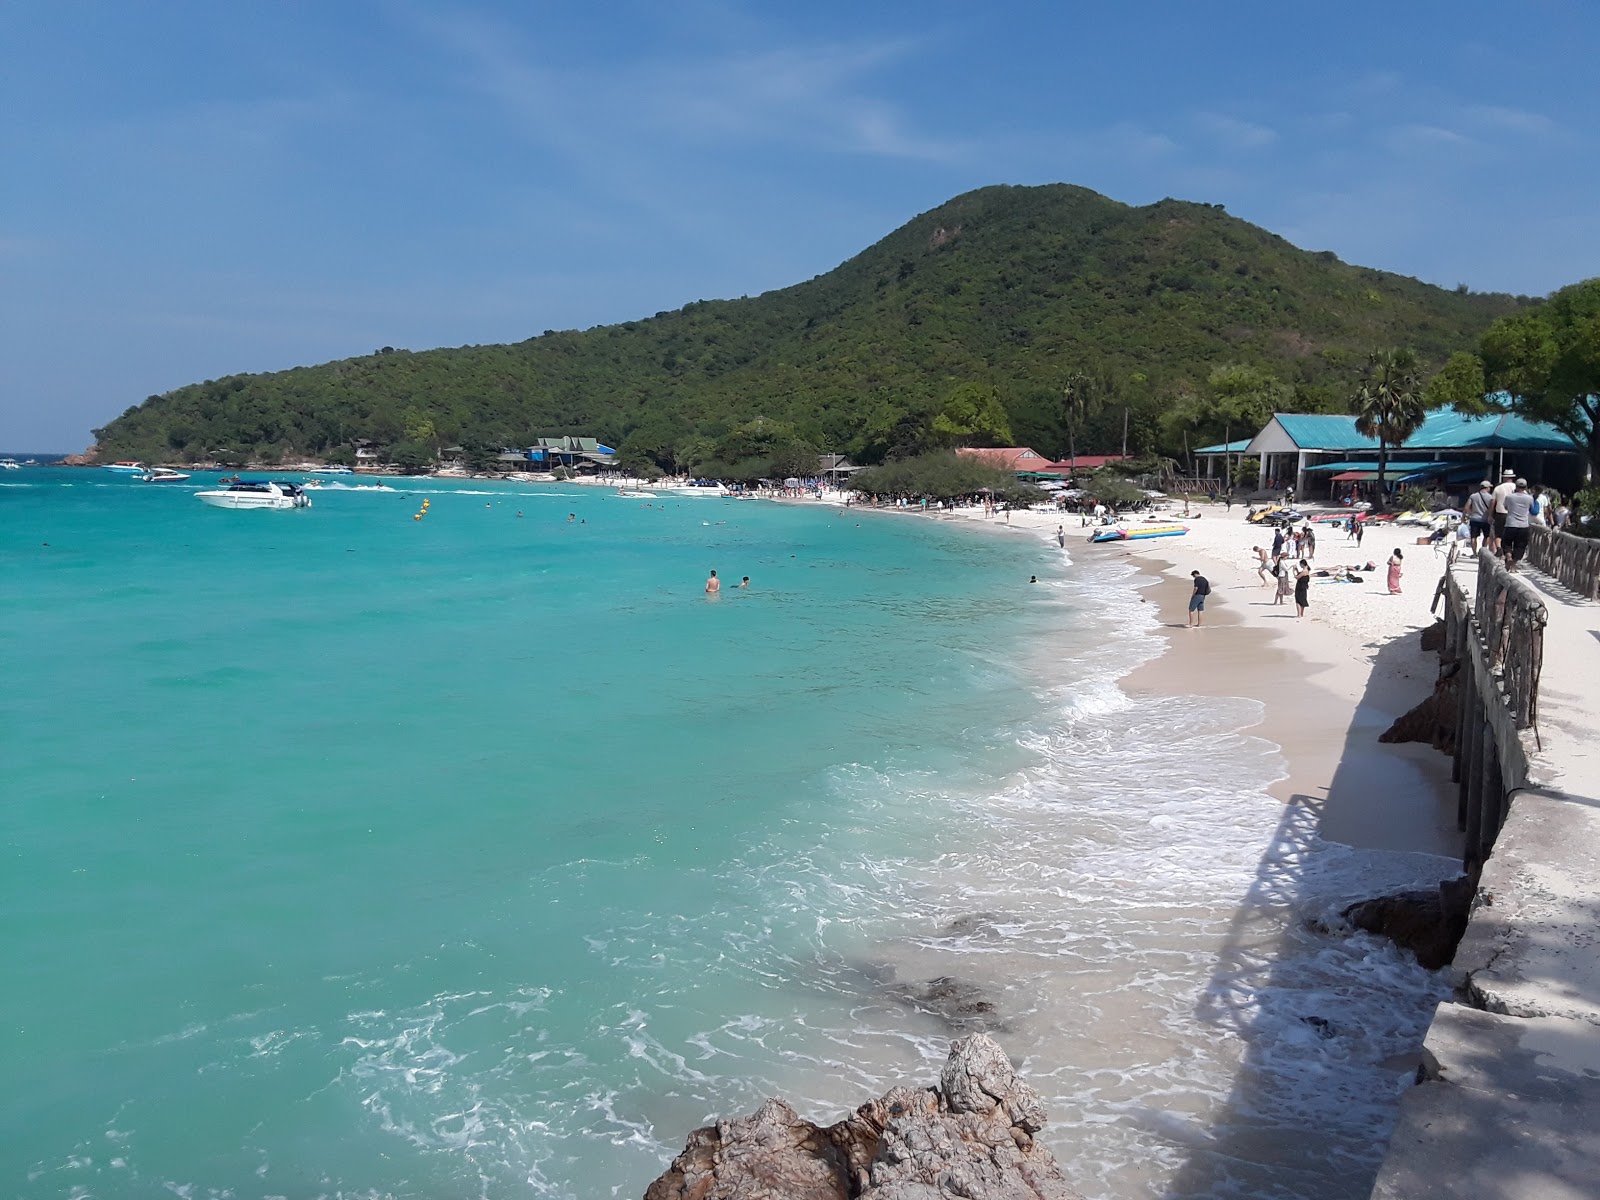 Tien Beach'in fotoğrafı parlak kum yüzey ile